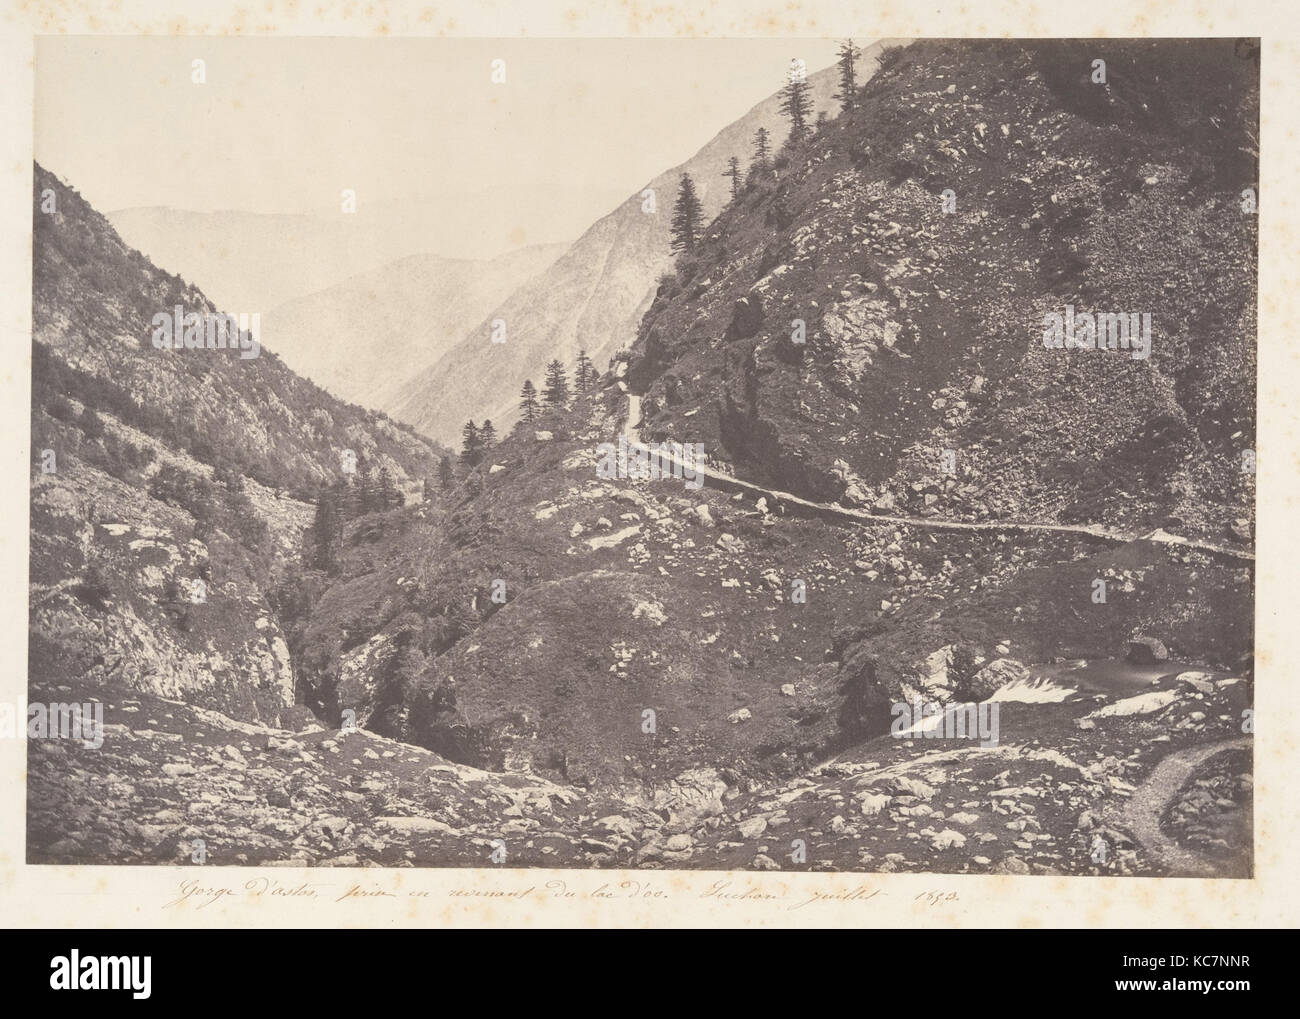 Gorge d'Astos, prise en revenant du lac d'Oo, Luchon, Joseph Vigier, 1853 Banque D'Images